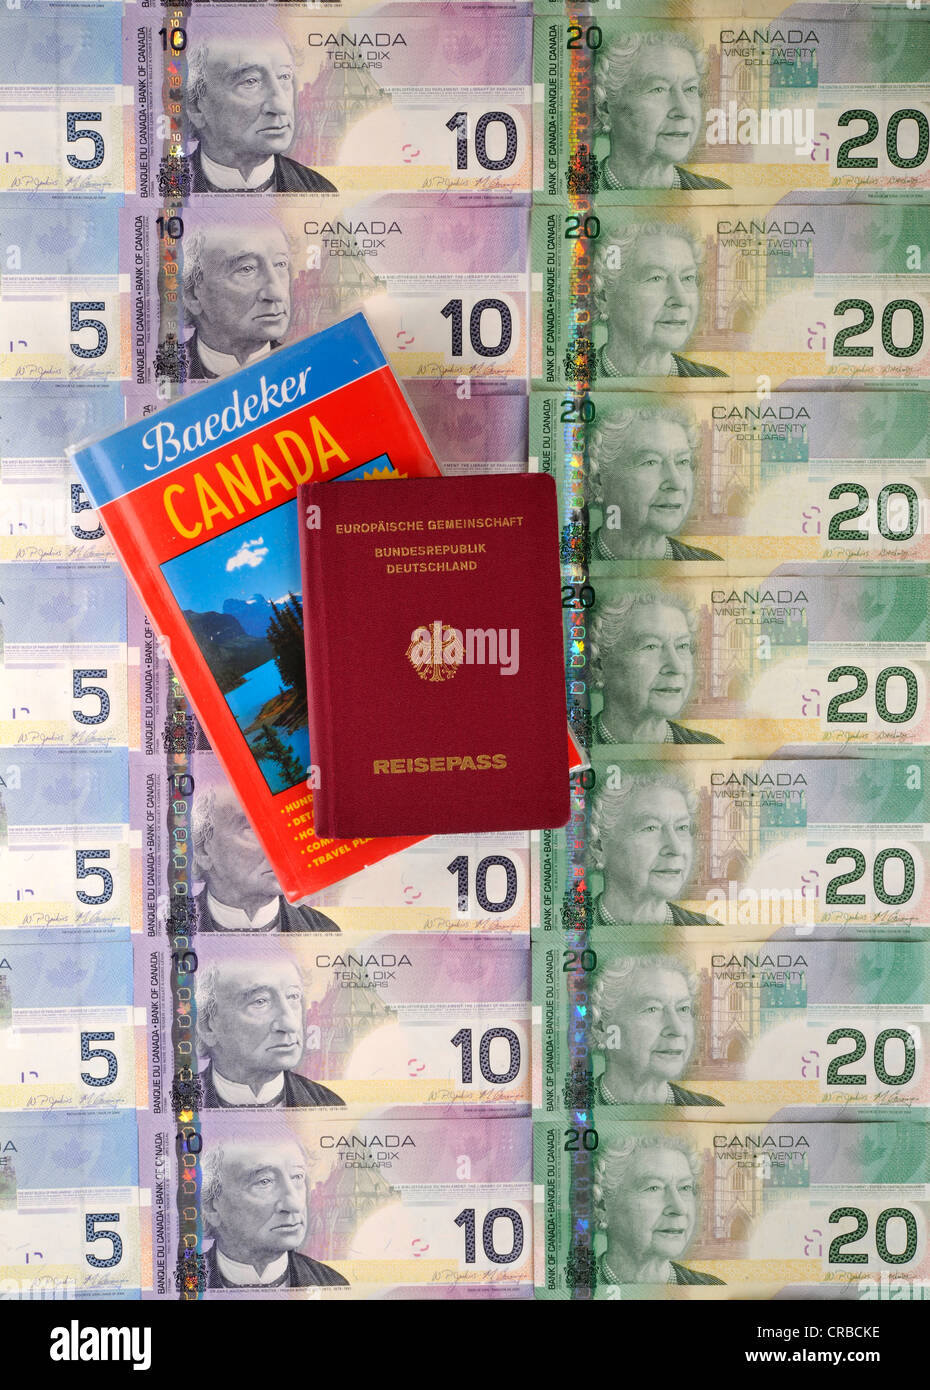 Reisepass der Bundesrepublik Deutschland, Reiseführer für Kanada, verschiedene kanadische Dollar-Banknoten Stockfoto